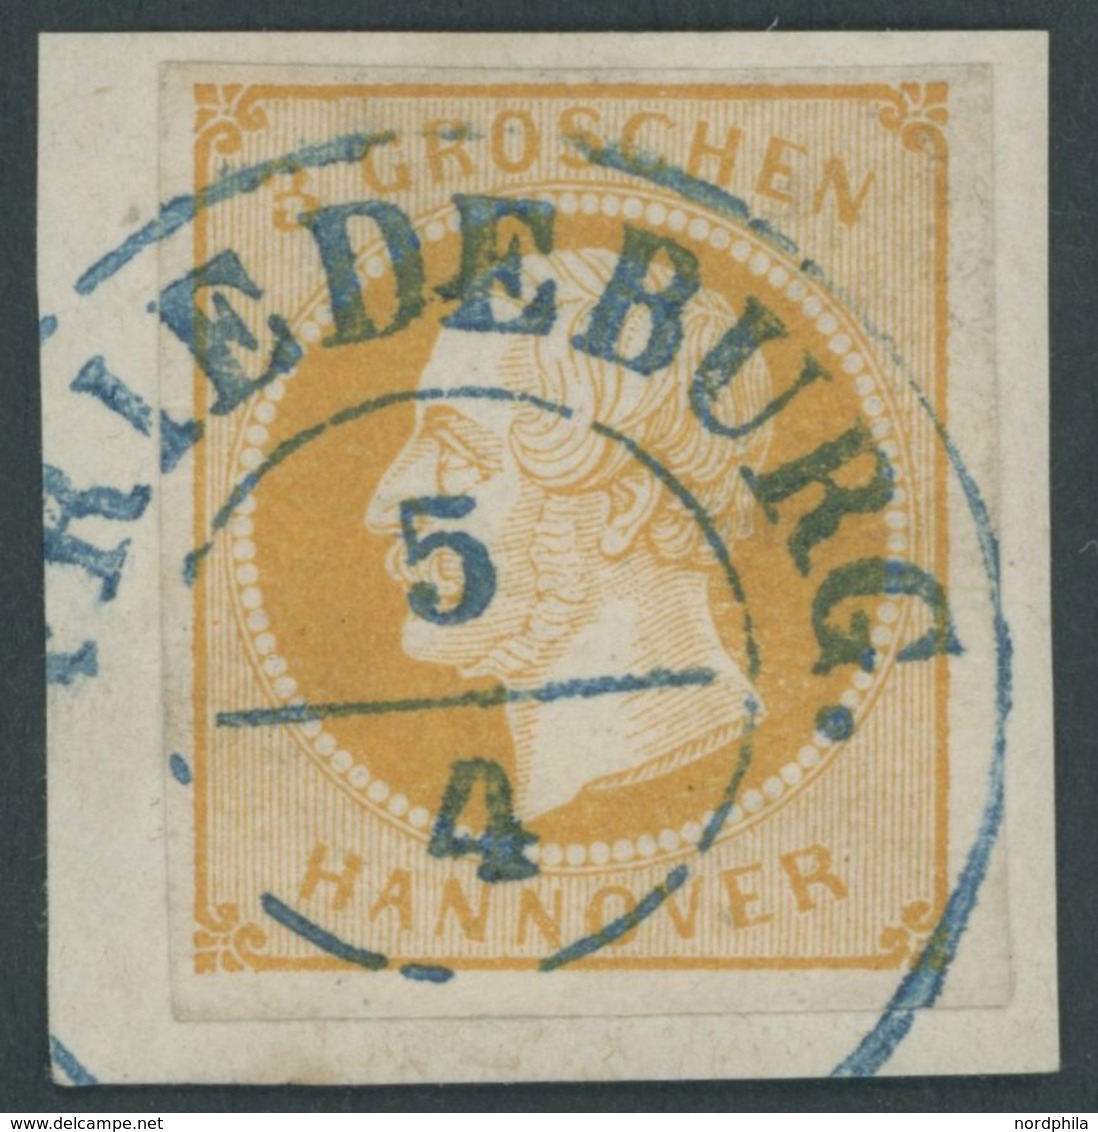 HANNOVER 16a BrfStk, 1859, 3 Gr. Gelborange, Zentrischer Blauer Stempel FRIEDEBURG, Prachtbriefstück - Hanovre